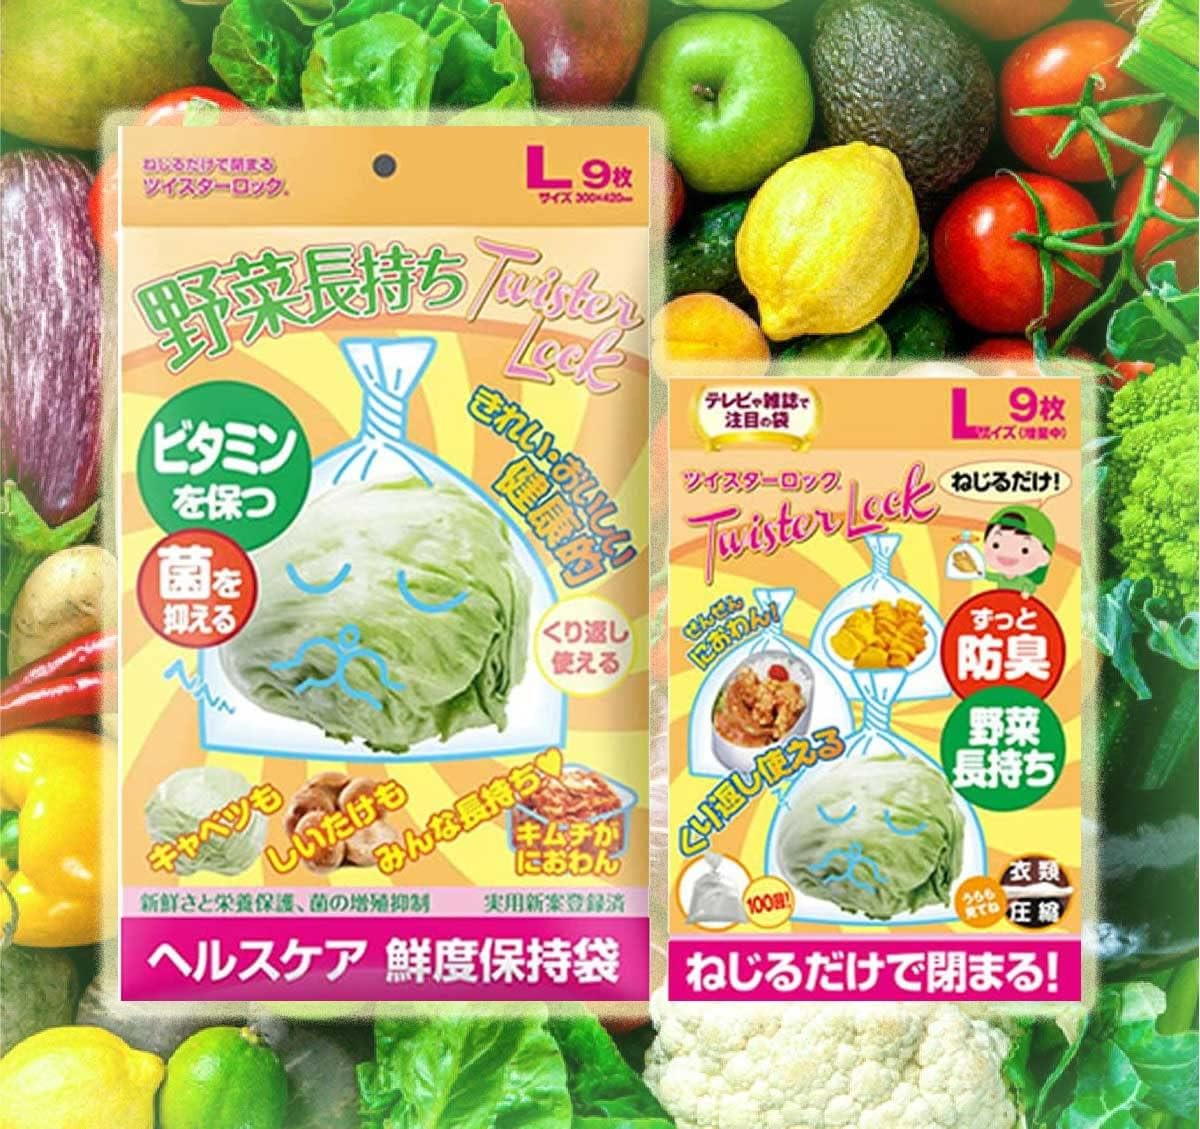 機能素材「鮮度保持袋」野菜長持ちツイスターロック（TWISTER LOCK）日本製 Lサイズ 18枚（9枚入り×2袋）食品衛生法適合 「防臭袋」「食品袋」「キッチン袋」「パン袋」